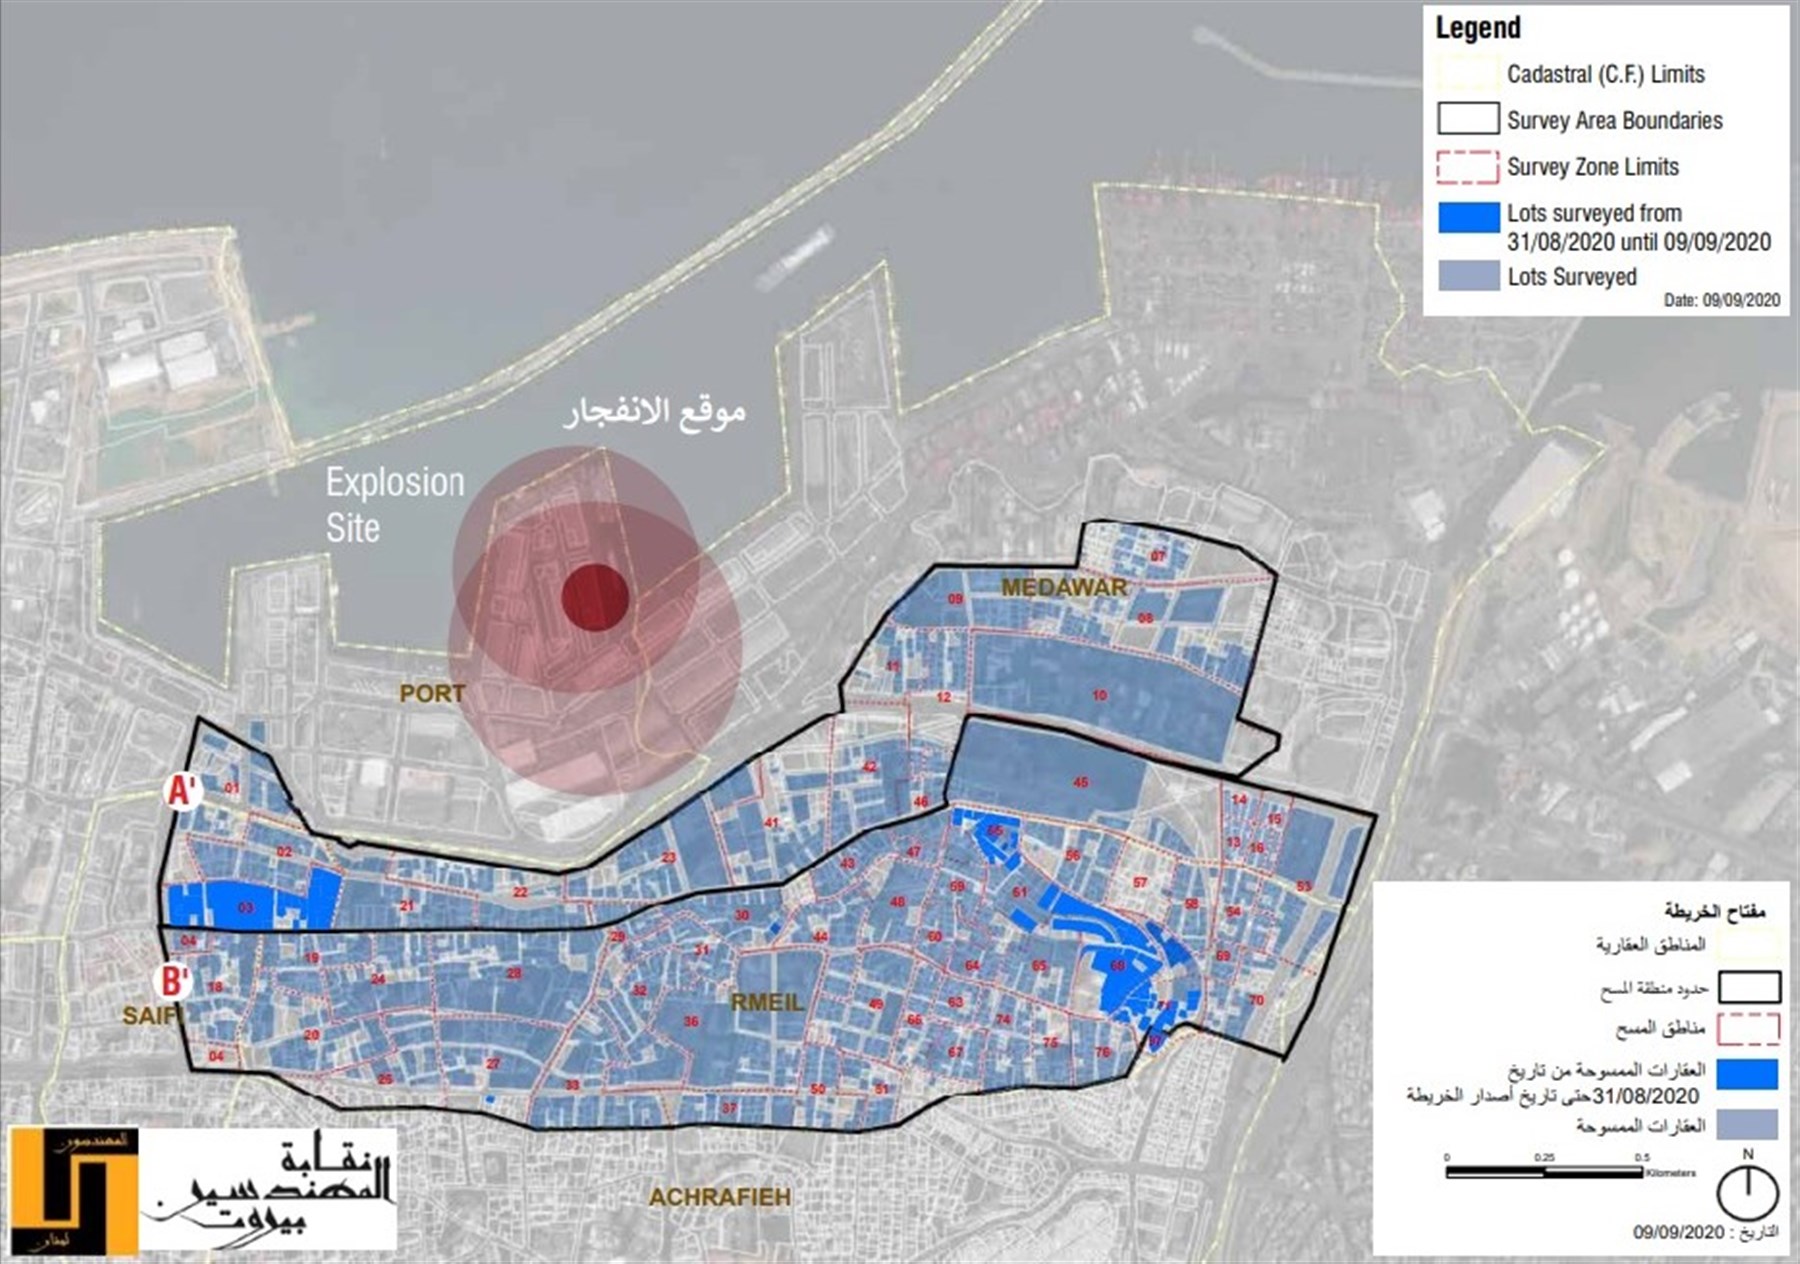 خريطة العقارات الممسوحة خلال عملية تقويم الأضرار التي أجرتها نقابة المهندسين عقب انفجار مرفأ بيروت